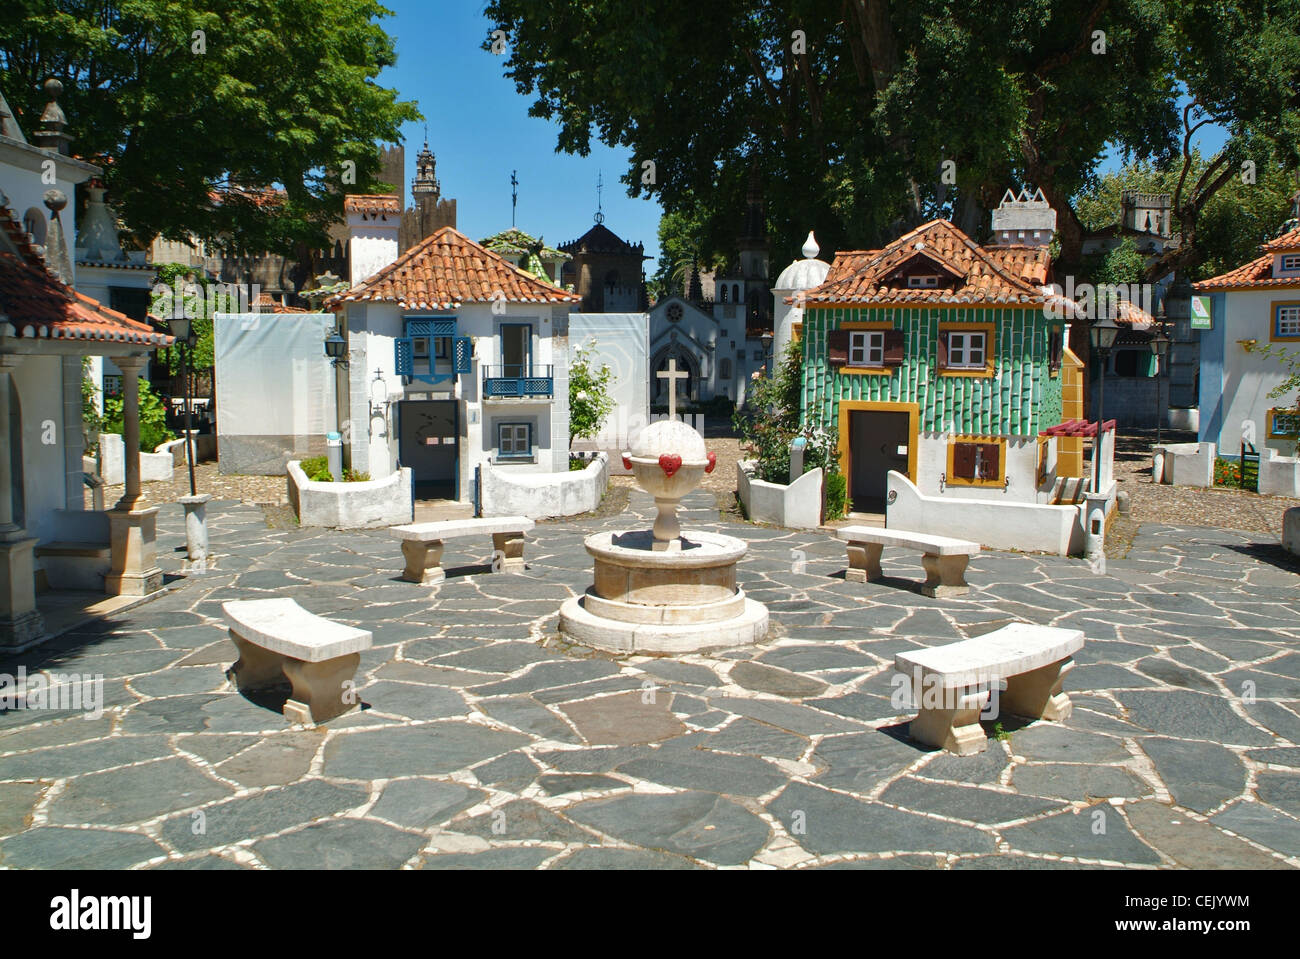 Case in miniatura in Portogallo dos Pequenitos parco a tema a Coimbra, Portogallo Foto Stock